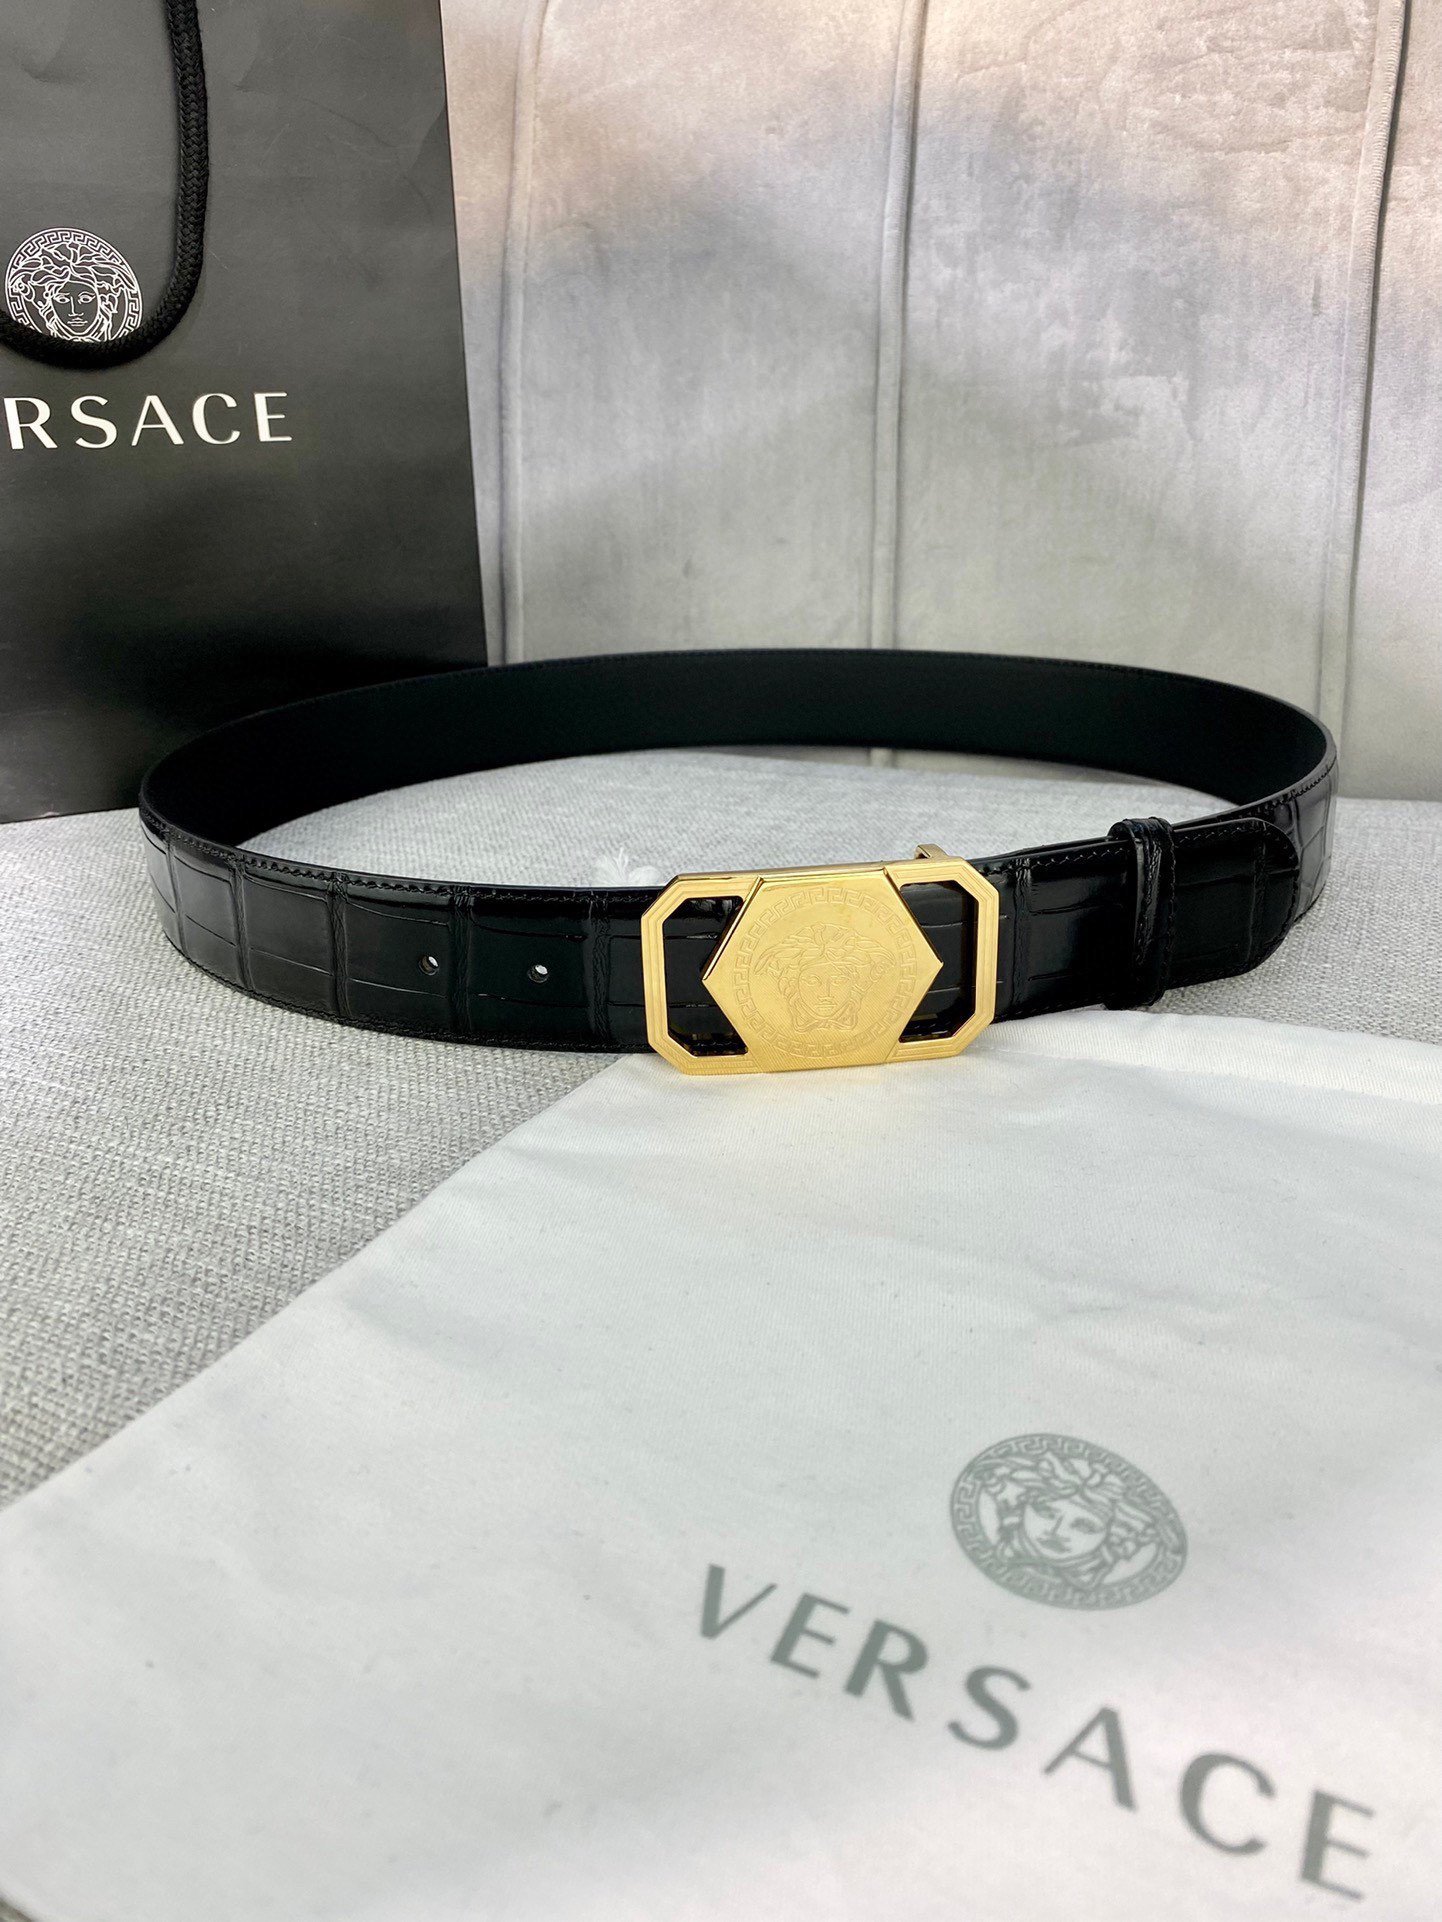 宽度4.0cmVERSACE范思哲此款腰带饰有标志性的Versace美杜莎头像带扣彰显品牌格调是一款精美